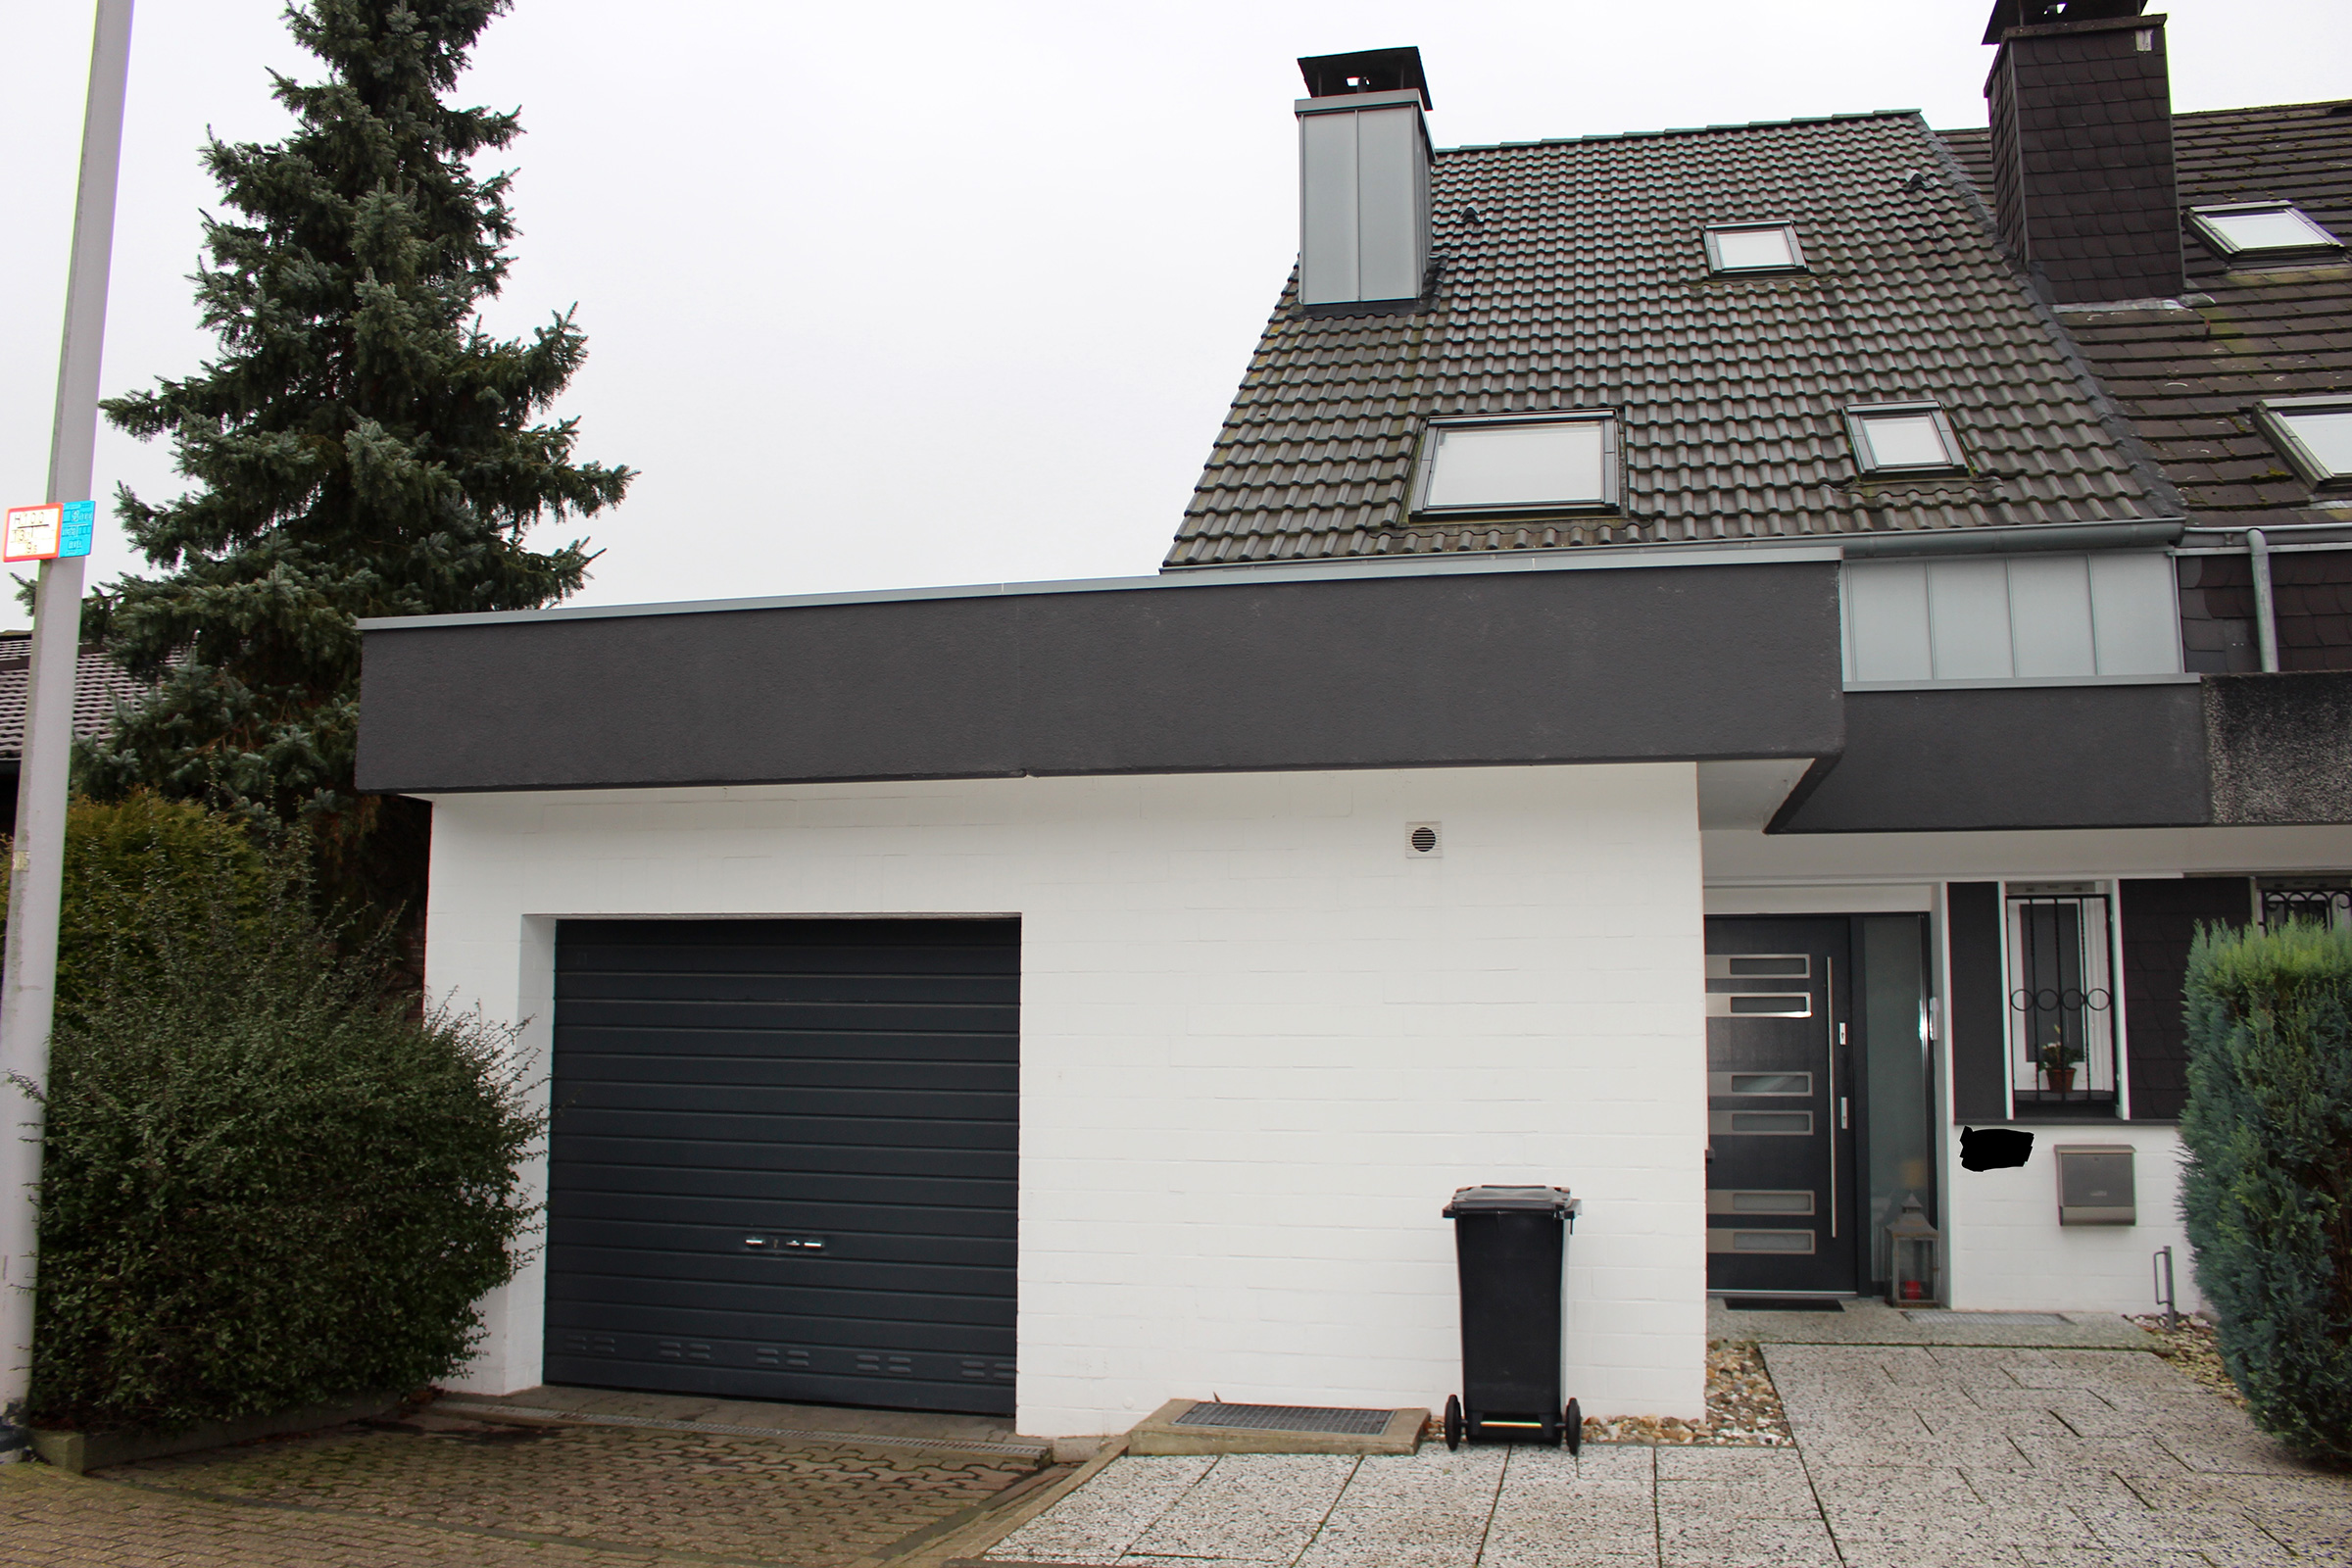 K∙IMMO∙S Referenzbild einer Doppelhaushälfte mit Garage